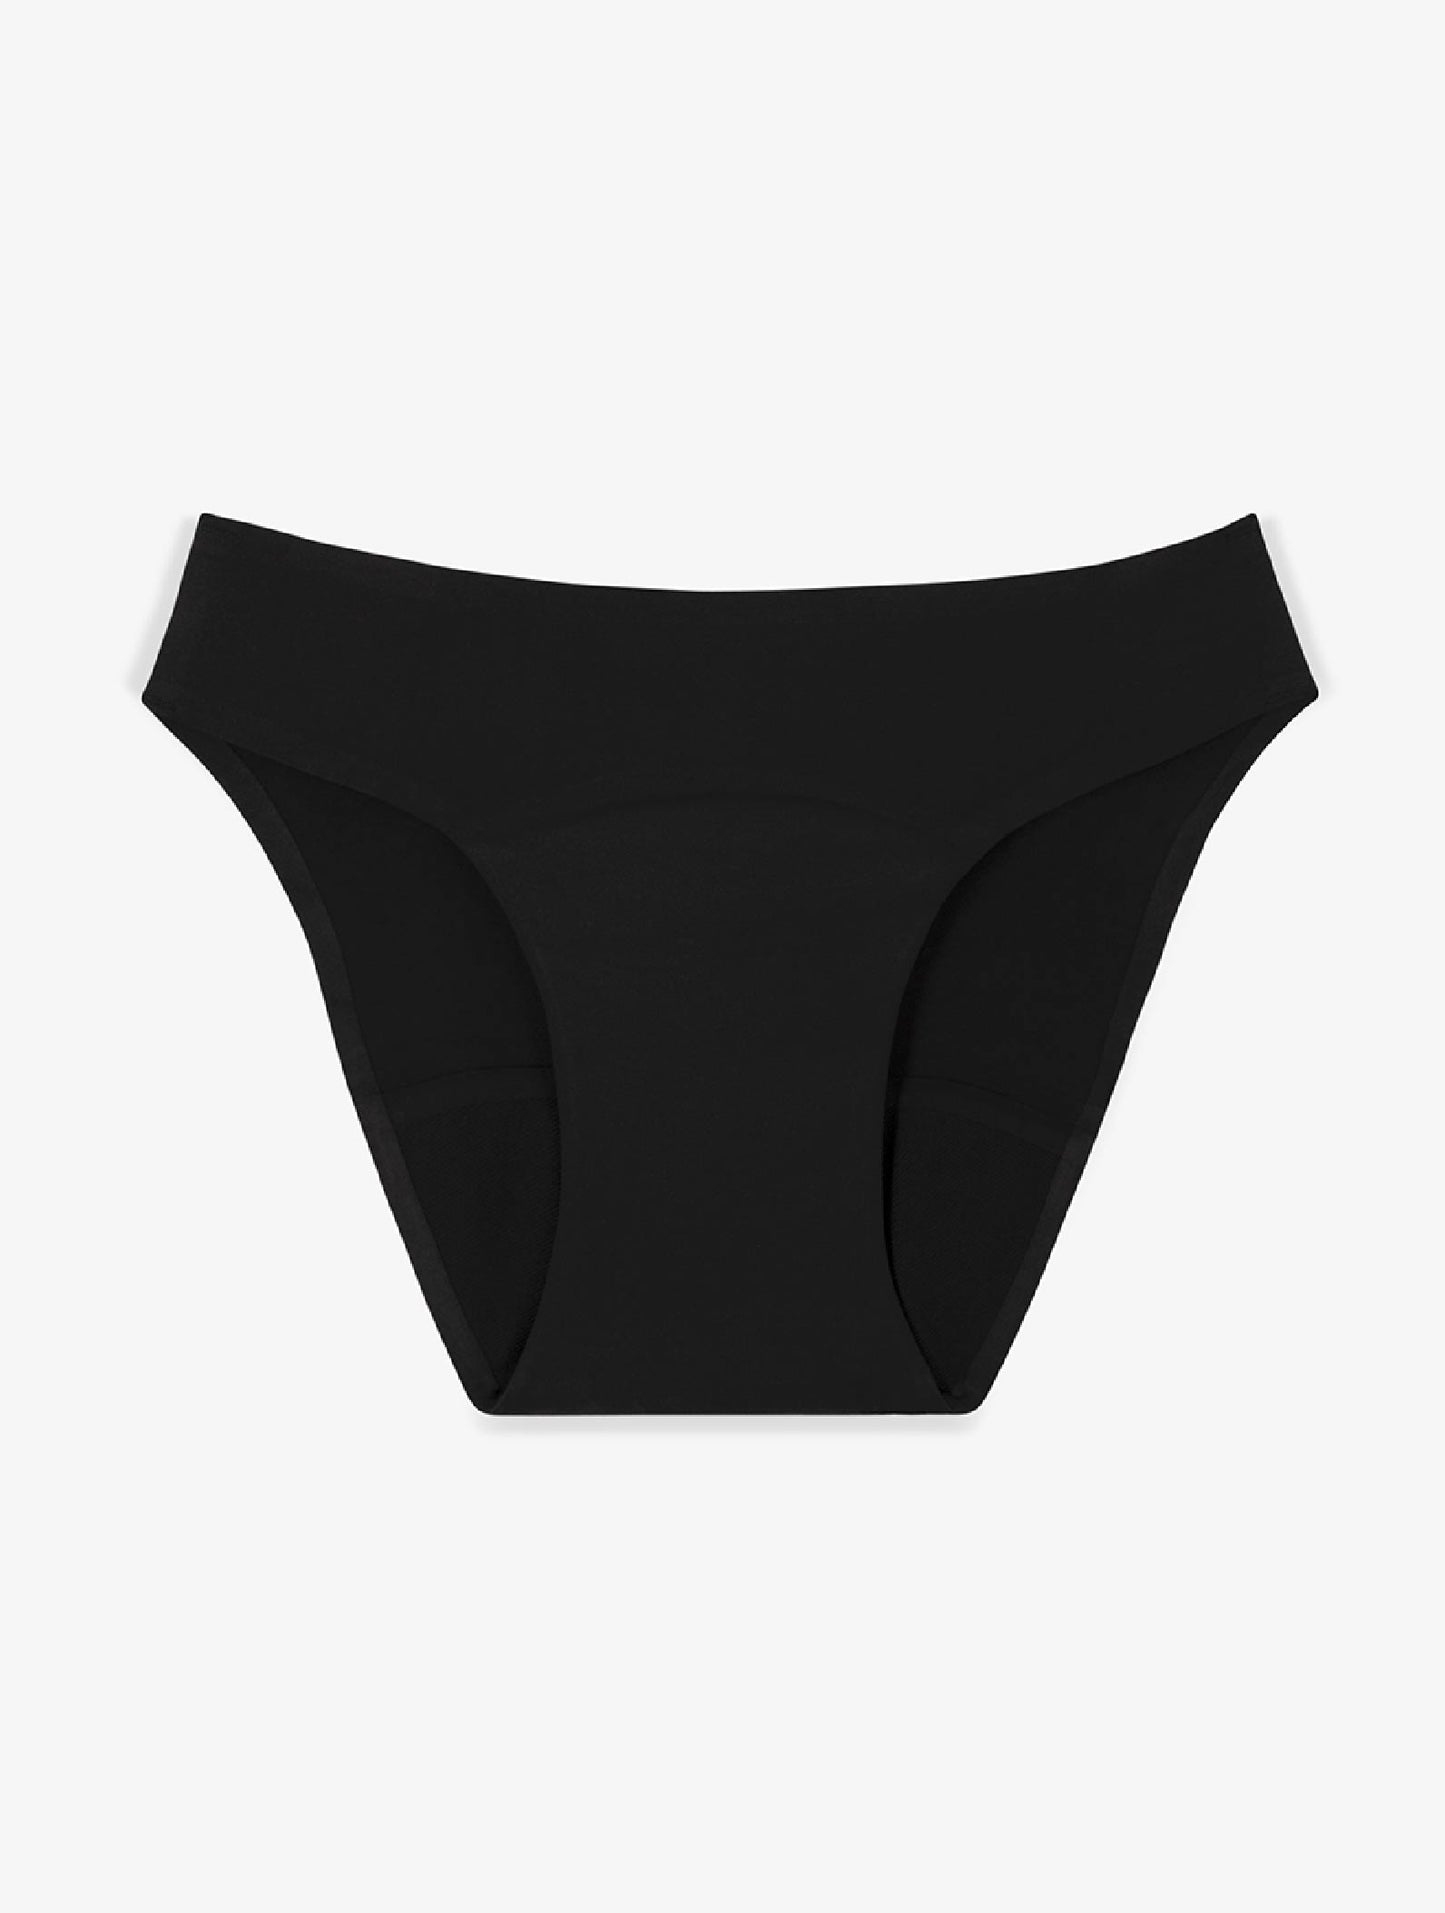 https://smoon-lingerie.com/cdn/shop/products/culotte-microfibre-flux-abondant-noir-non-porte_1445x.jpg?v=1655911107